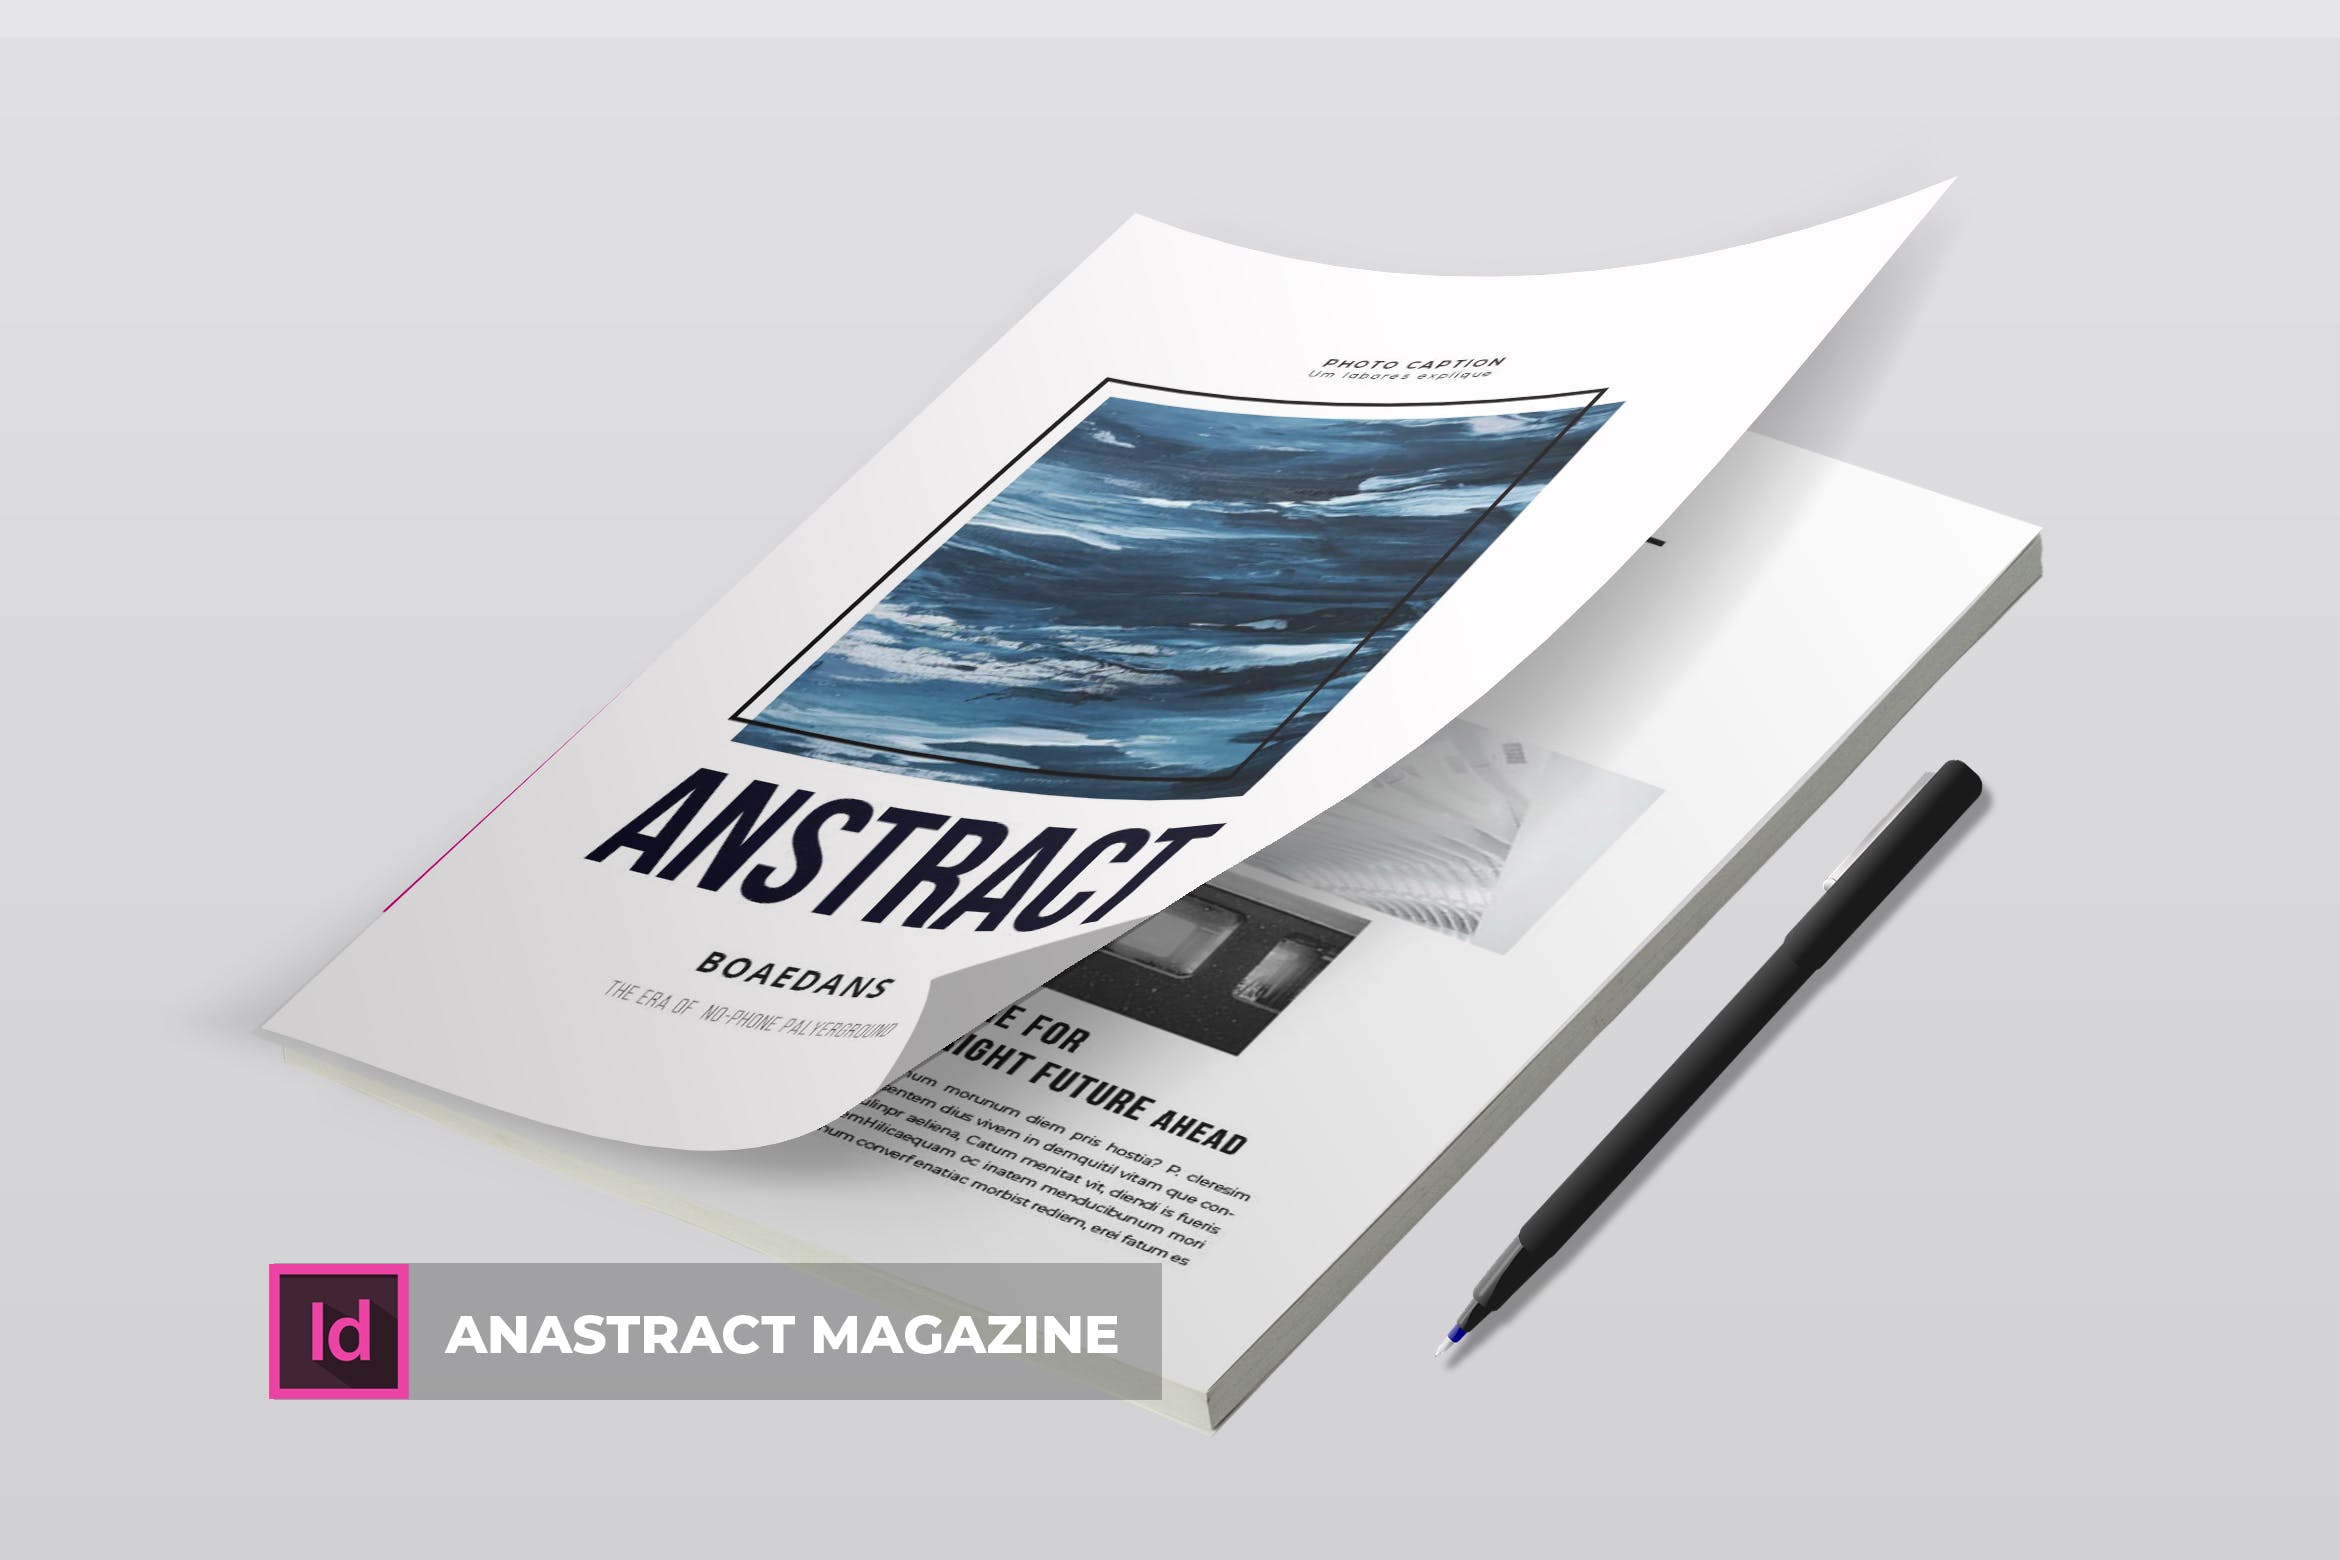 简约企业杂志版式设计模板 Anastract | Magazine Template插图